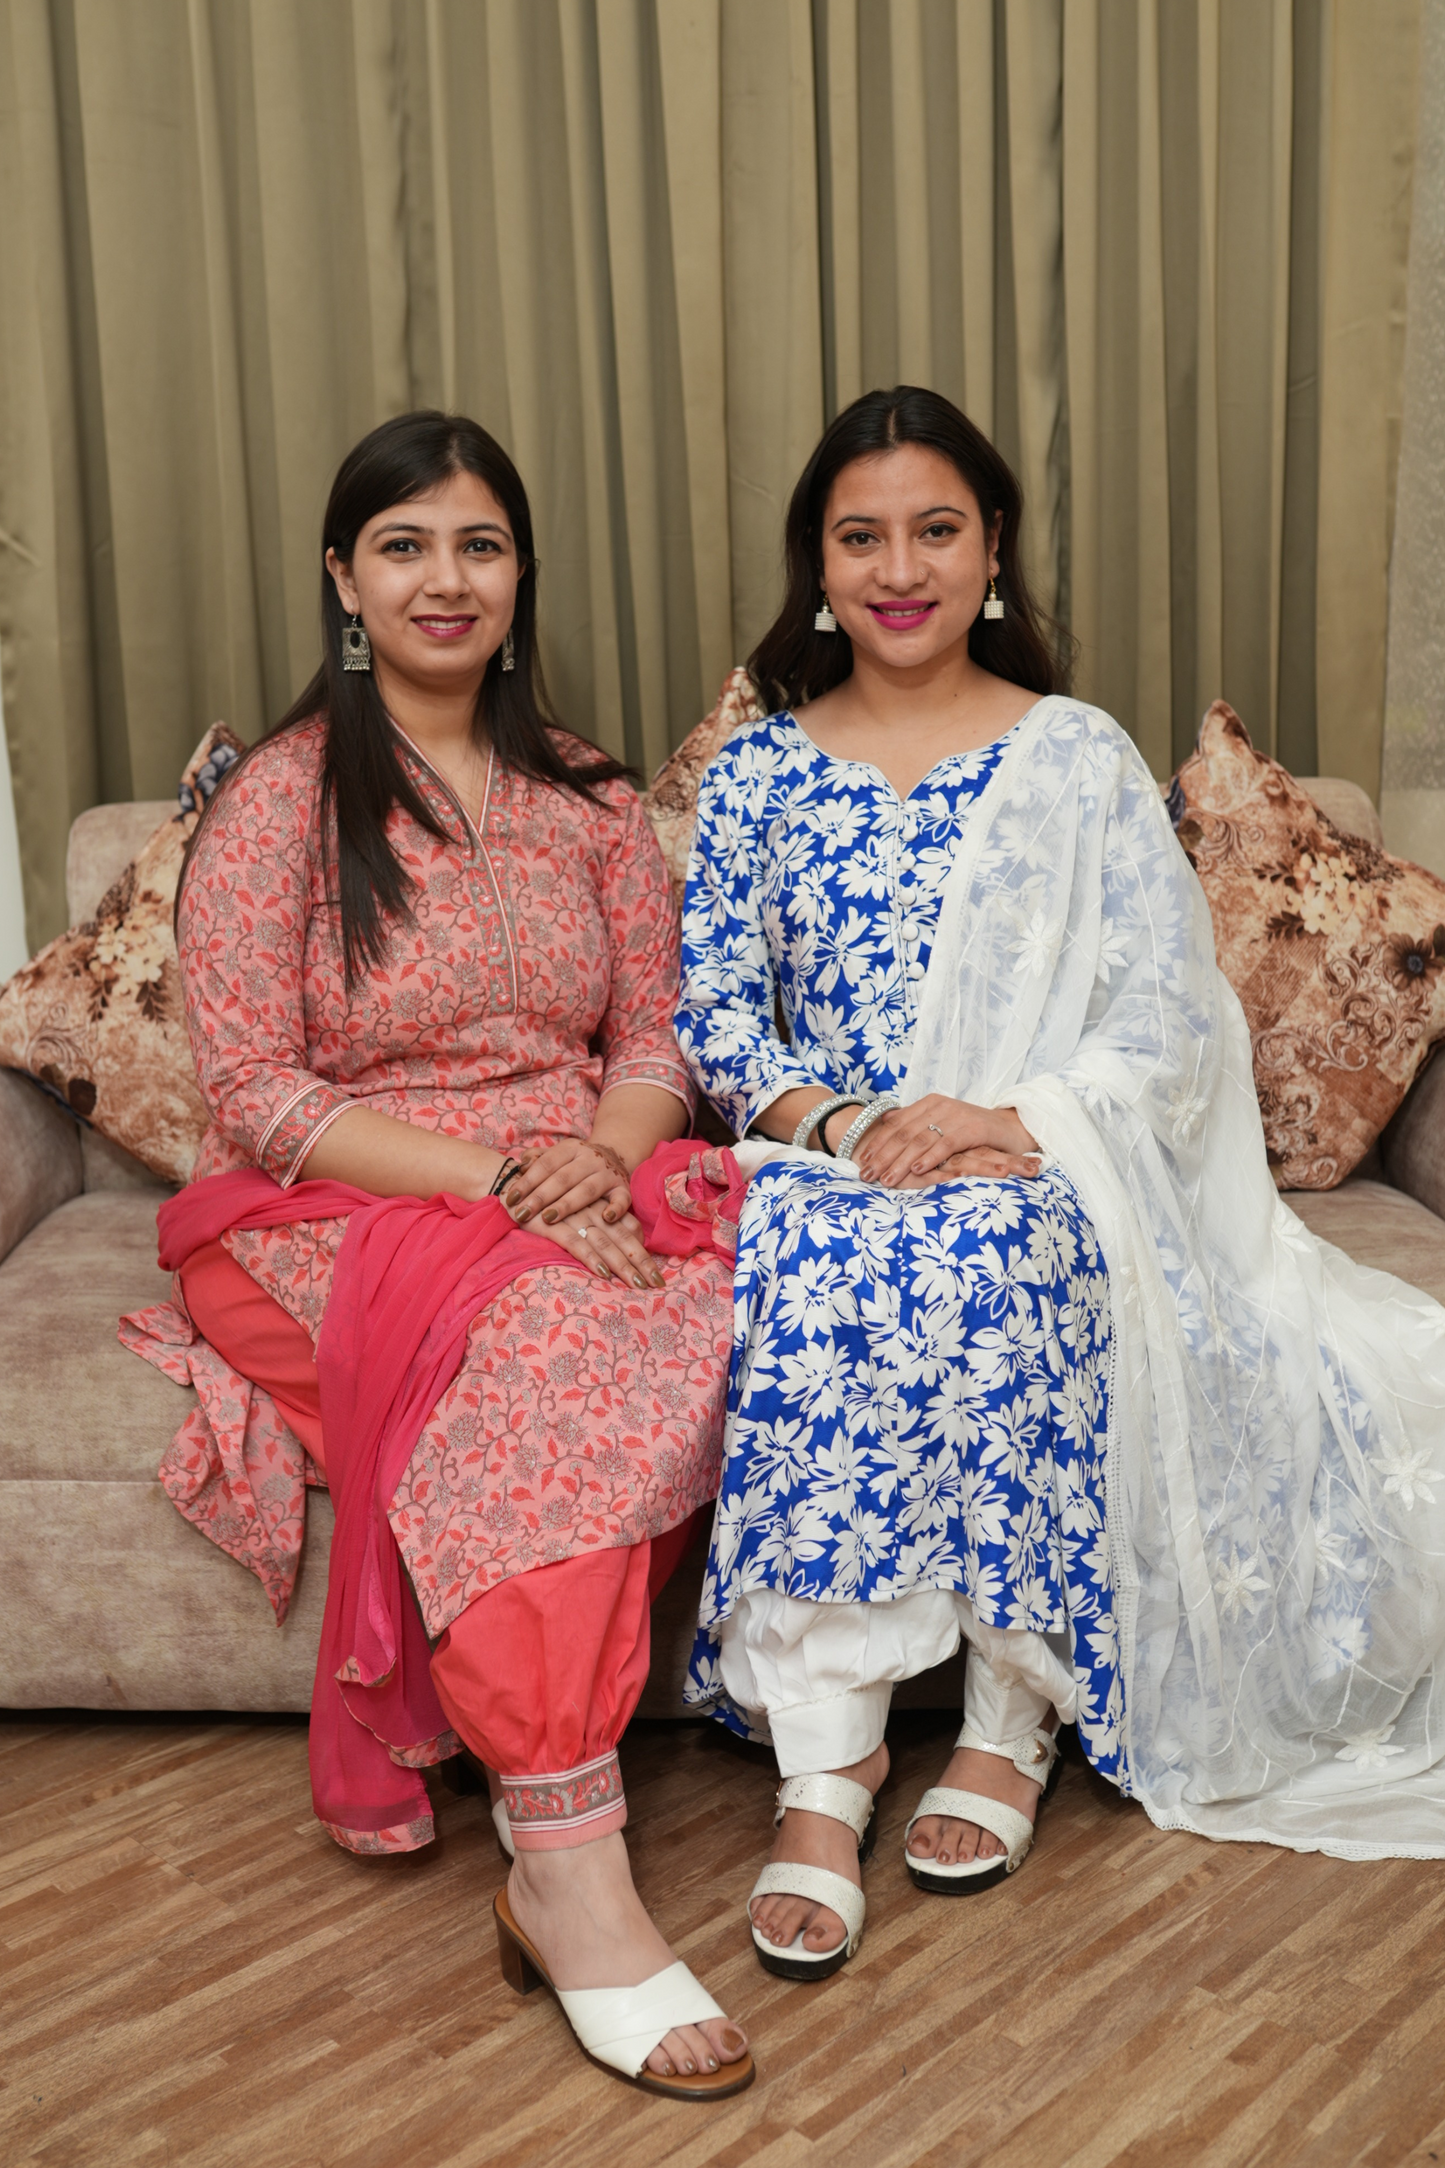 Blush Blossom Cotton Afghani Suit